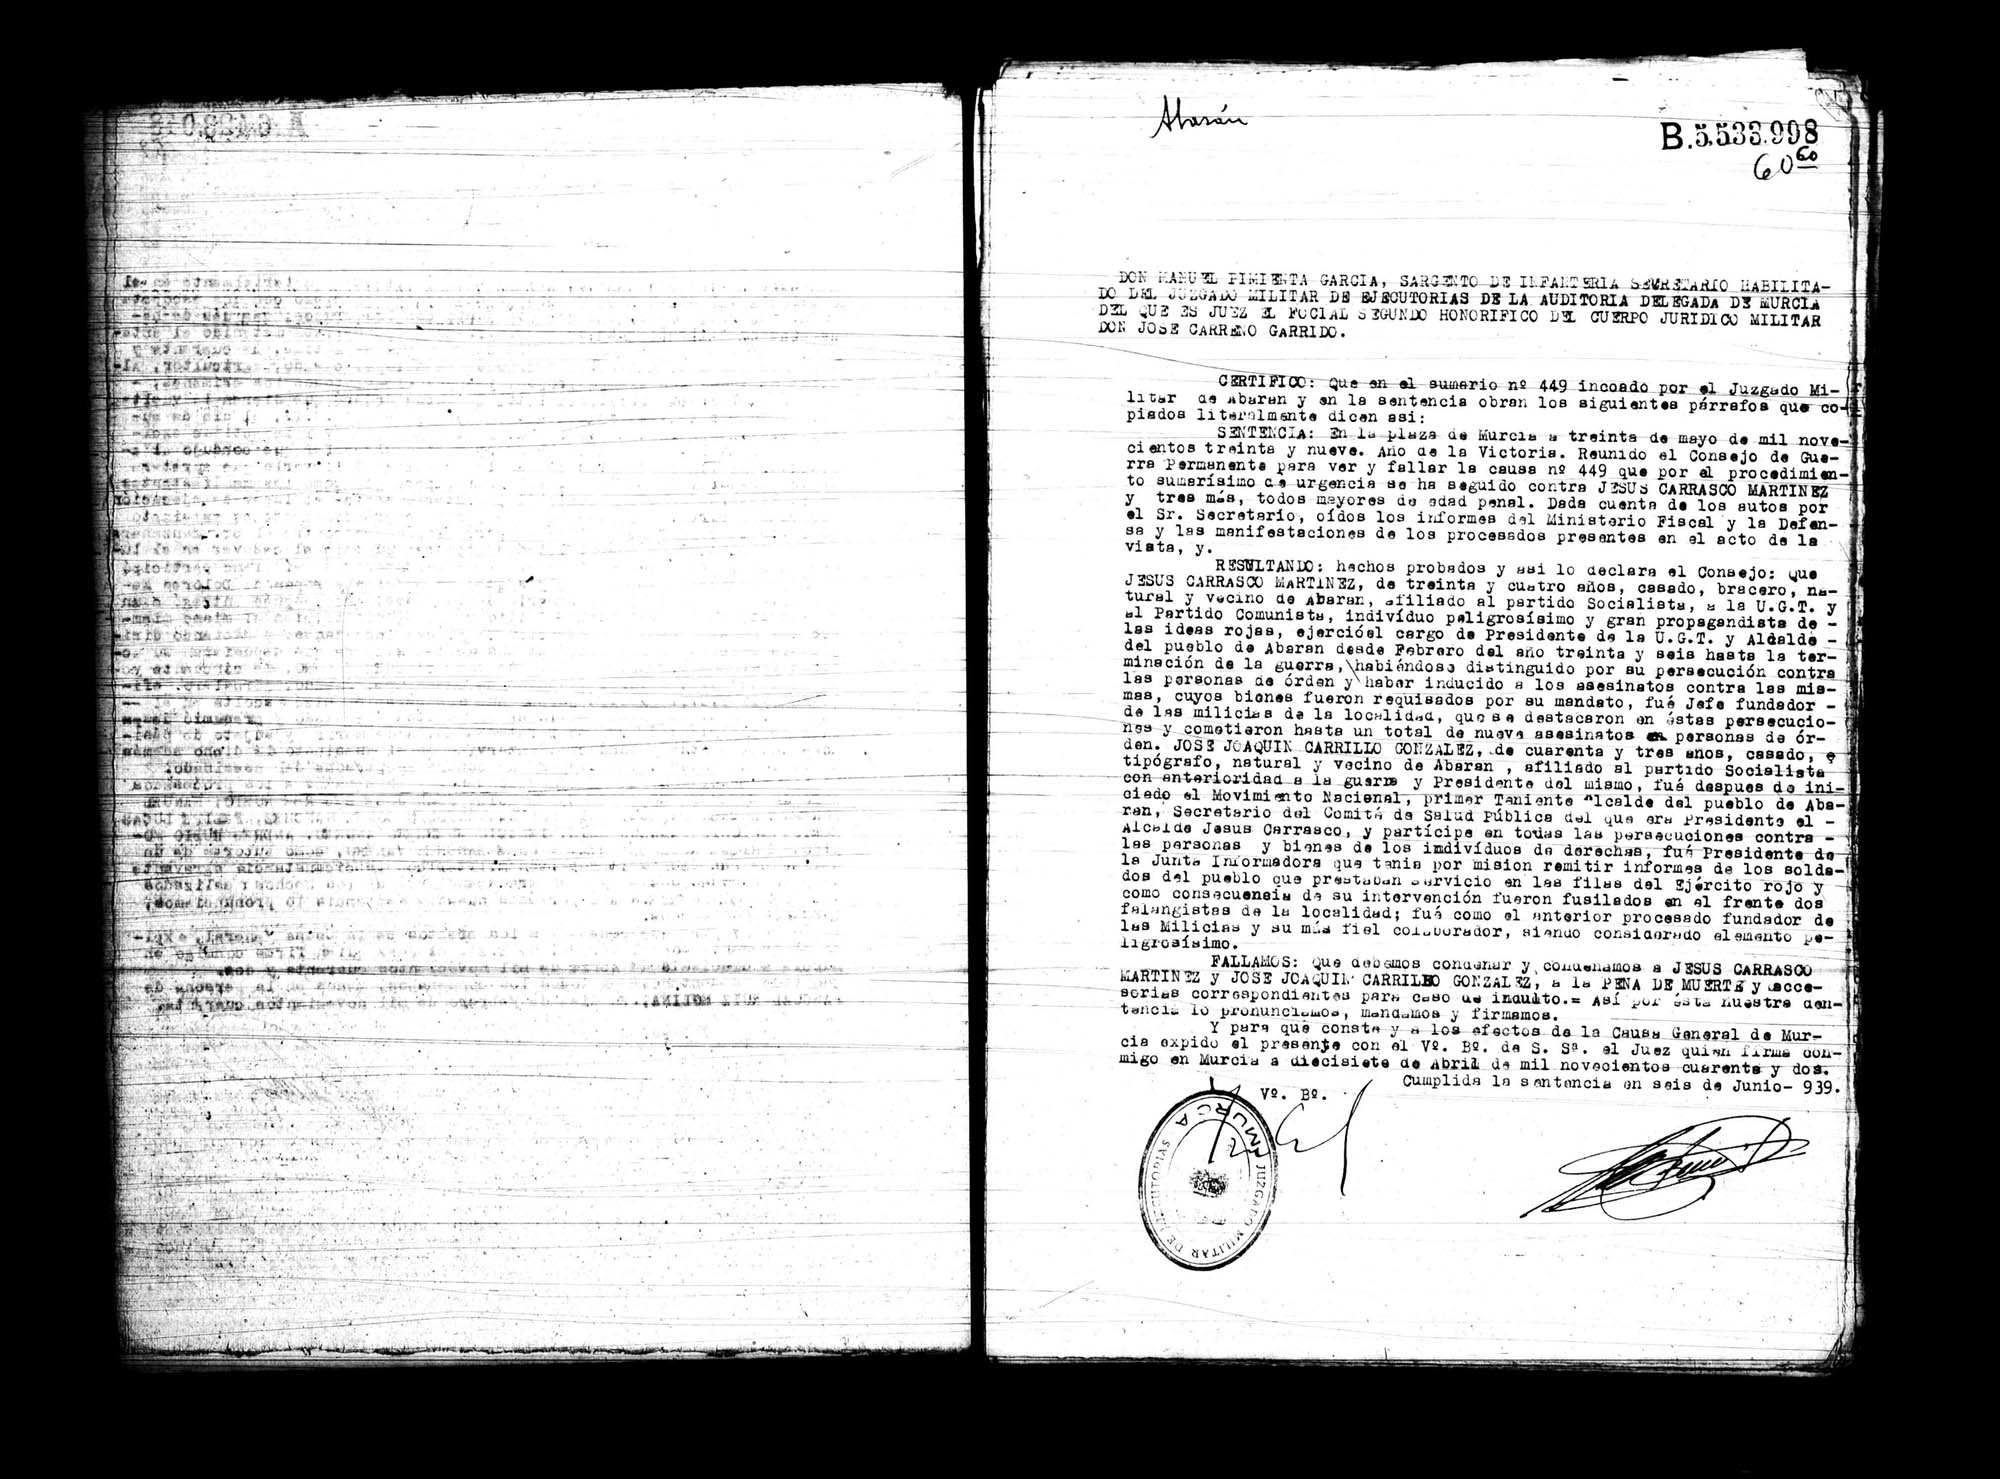 Certificado de la sentencia pronunciada contra Jesús Carrasco Martínez y José Joaquín Carrillo González, causa 449, el 30 de mayo de 1939 en Murcia.